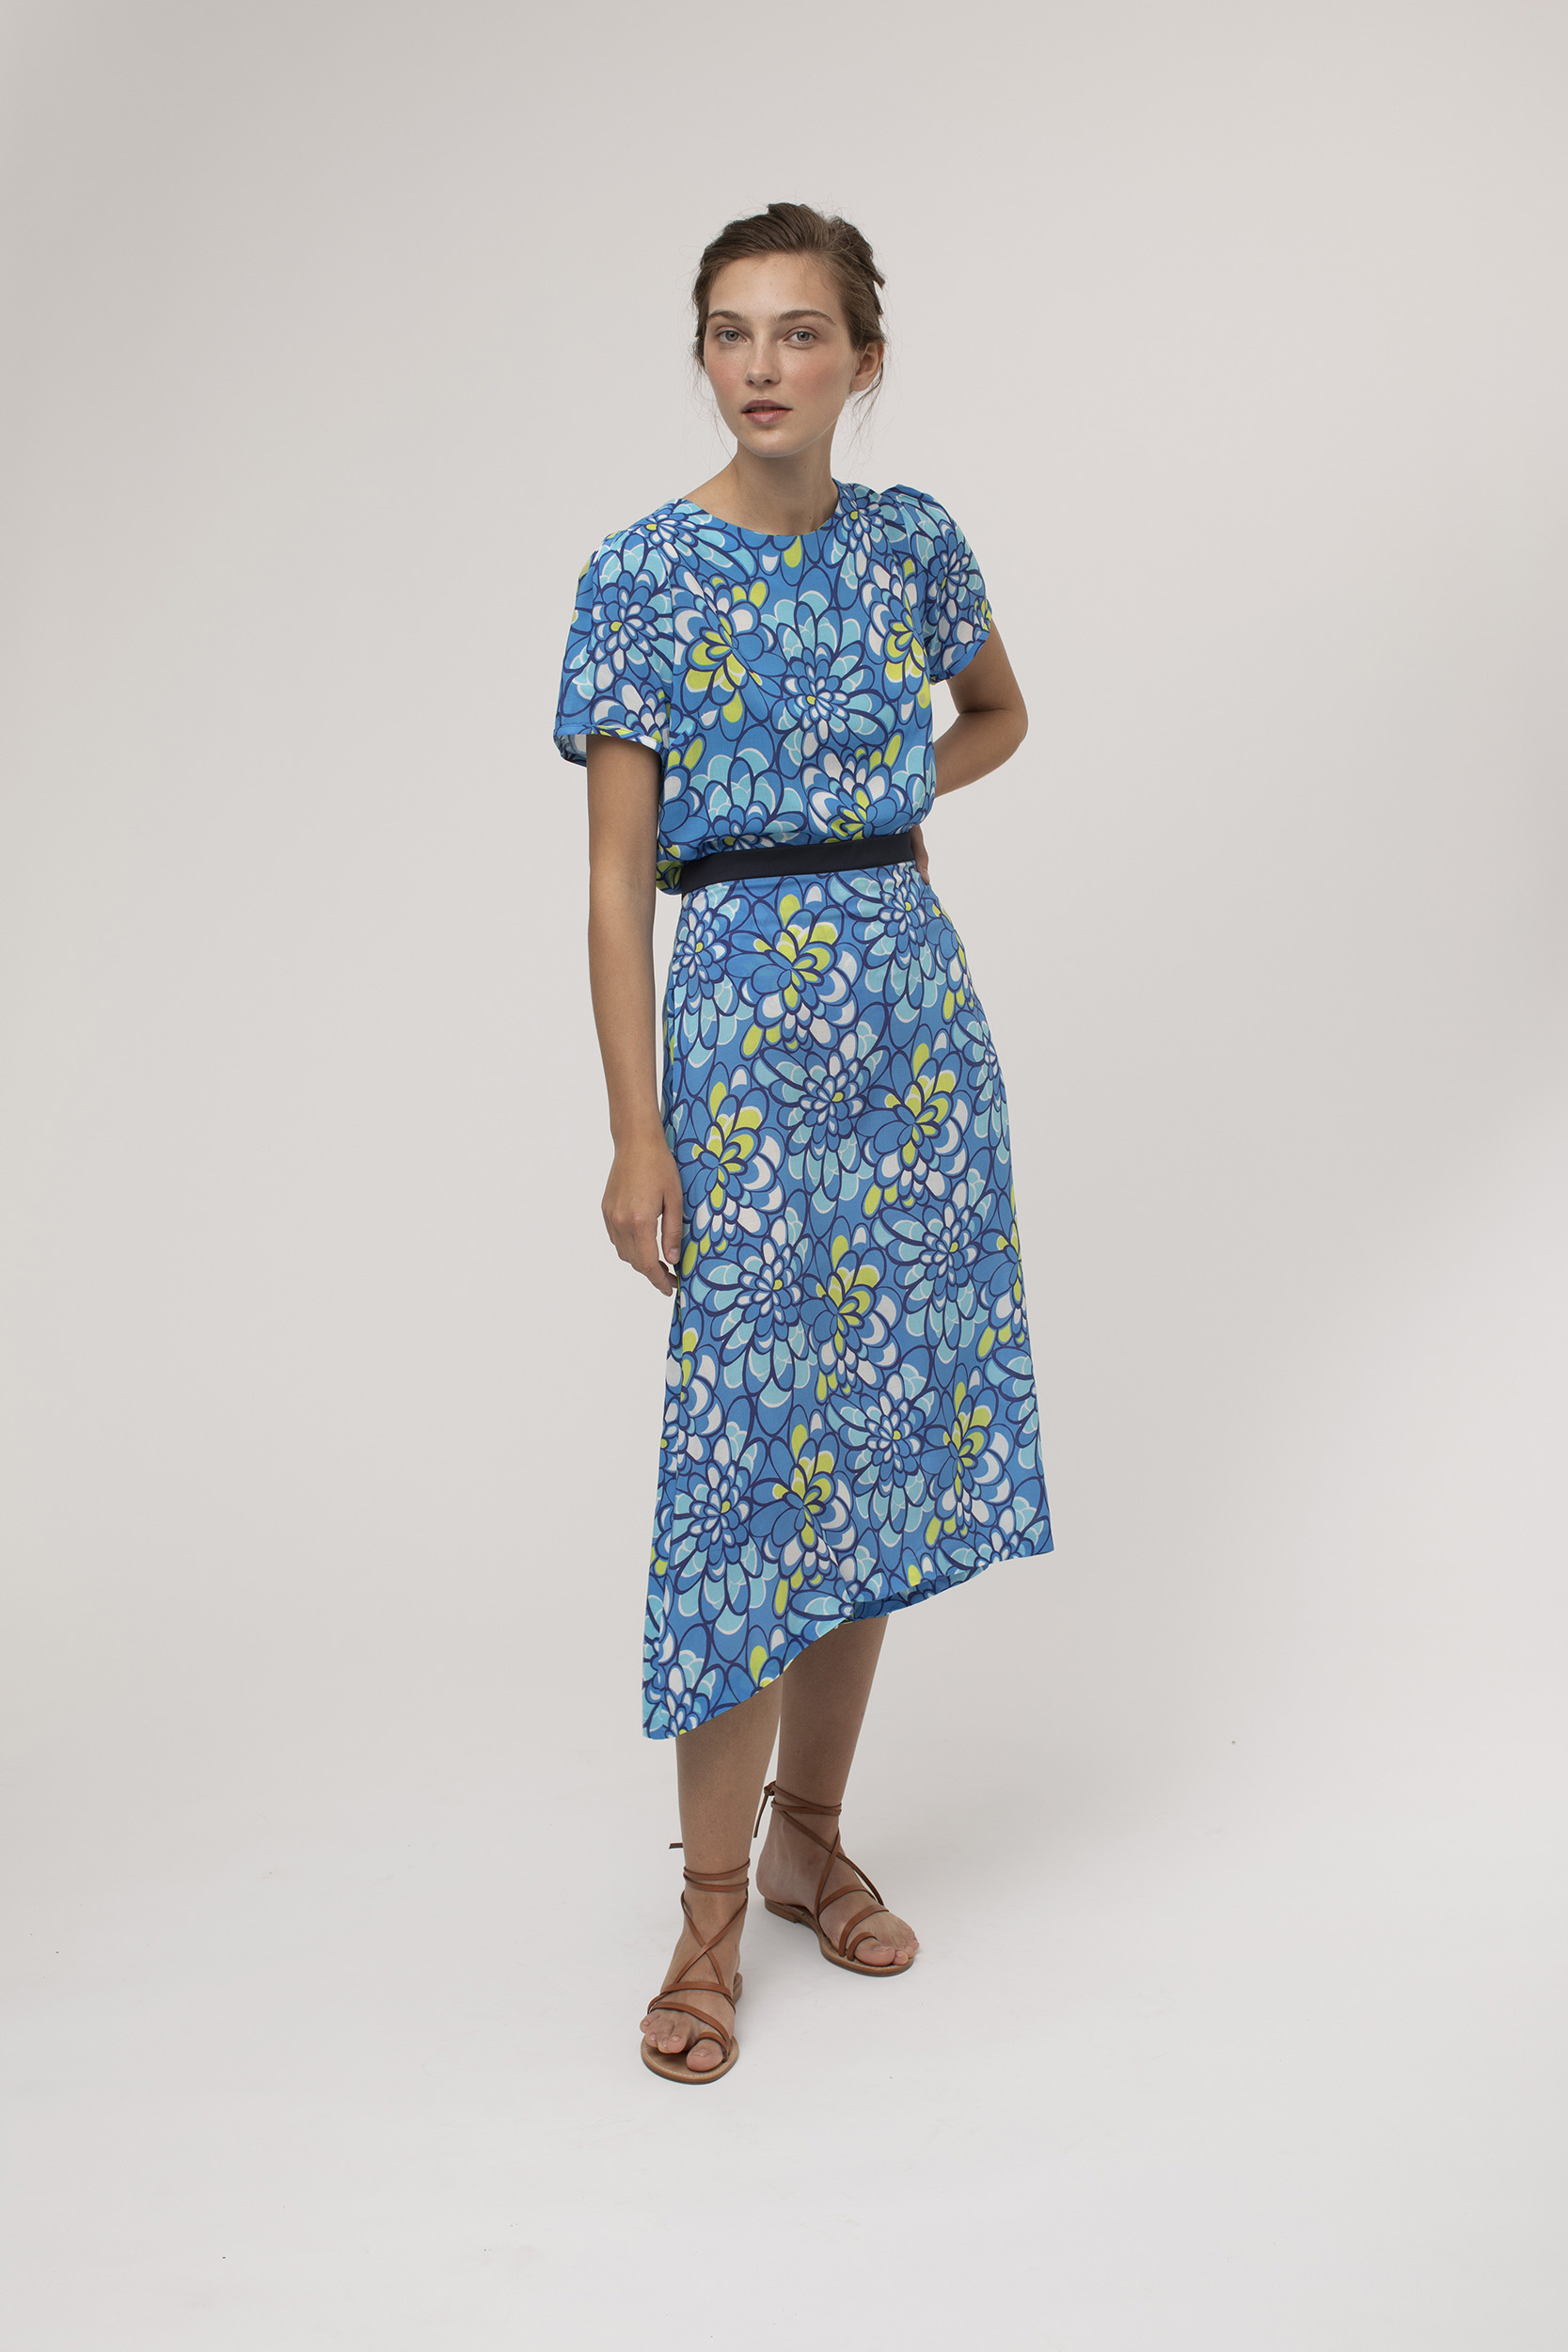 Falda Mariona en print azul: Colección Slow Fashion. Ropa De Online